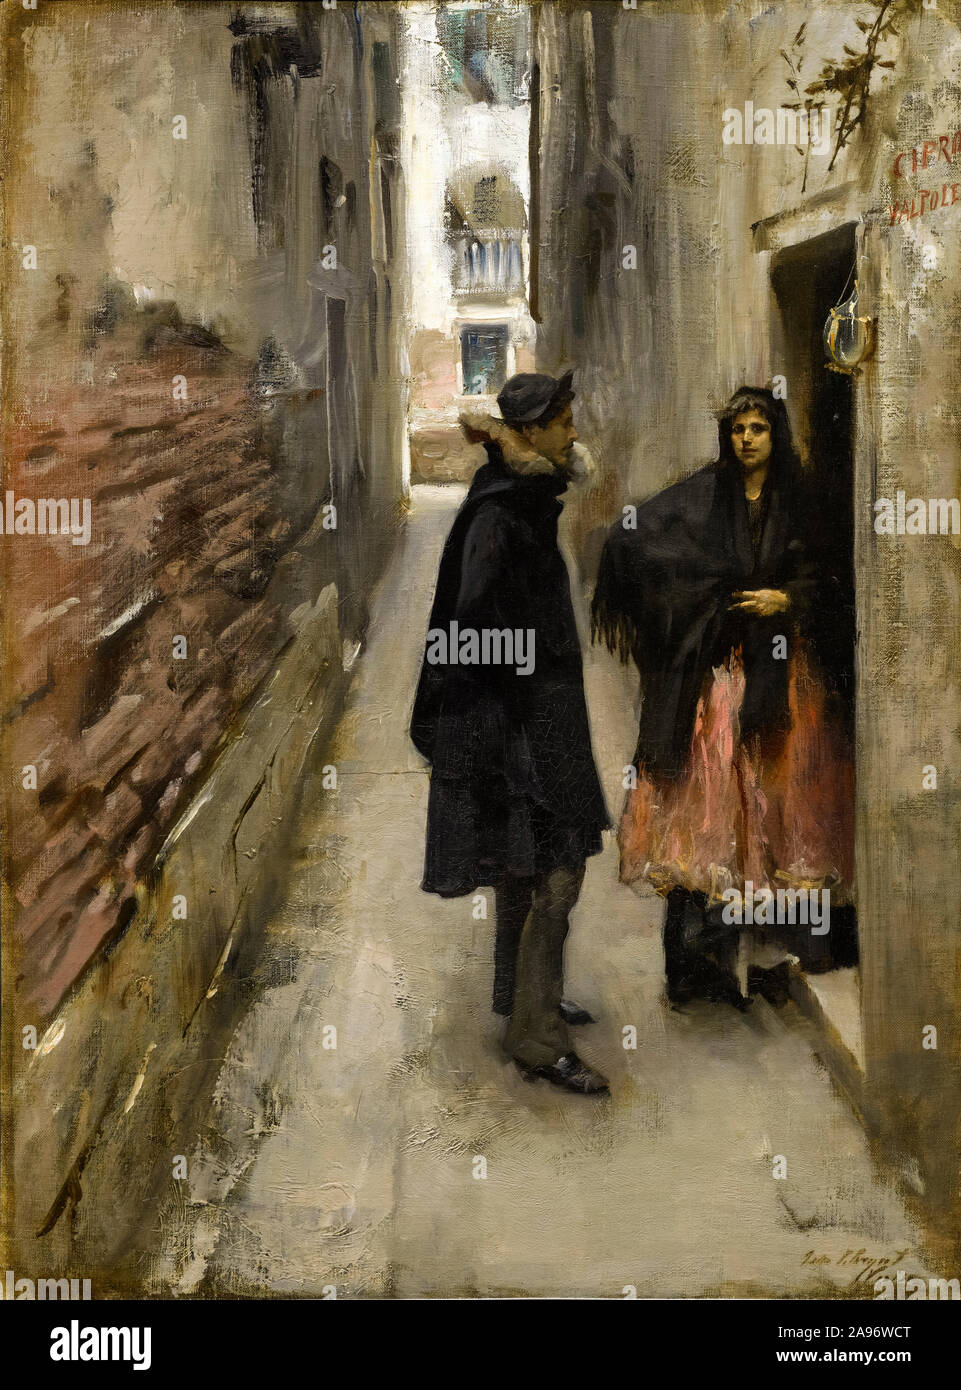 John Singer Sargent, une rue de Venise, peinture, 1880-1882 Banque D'Images